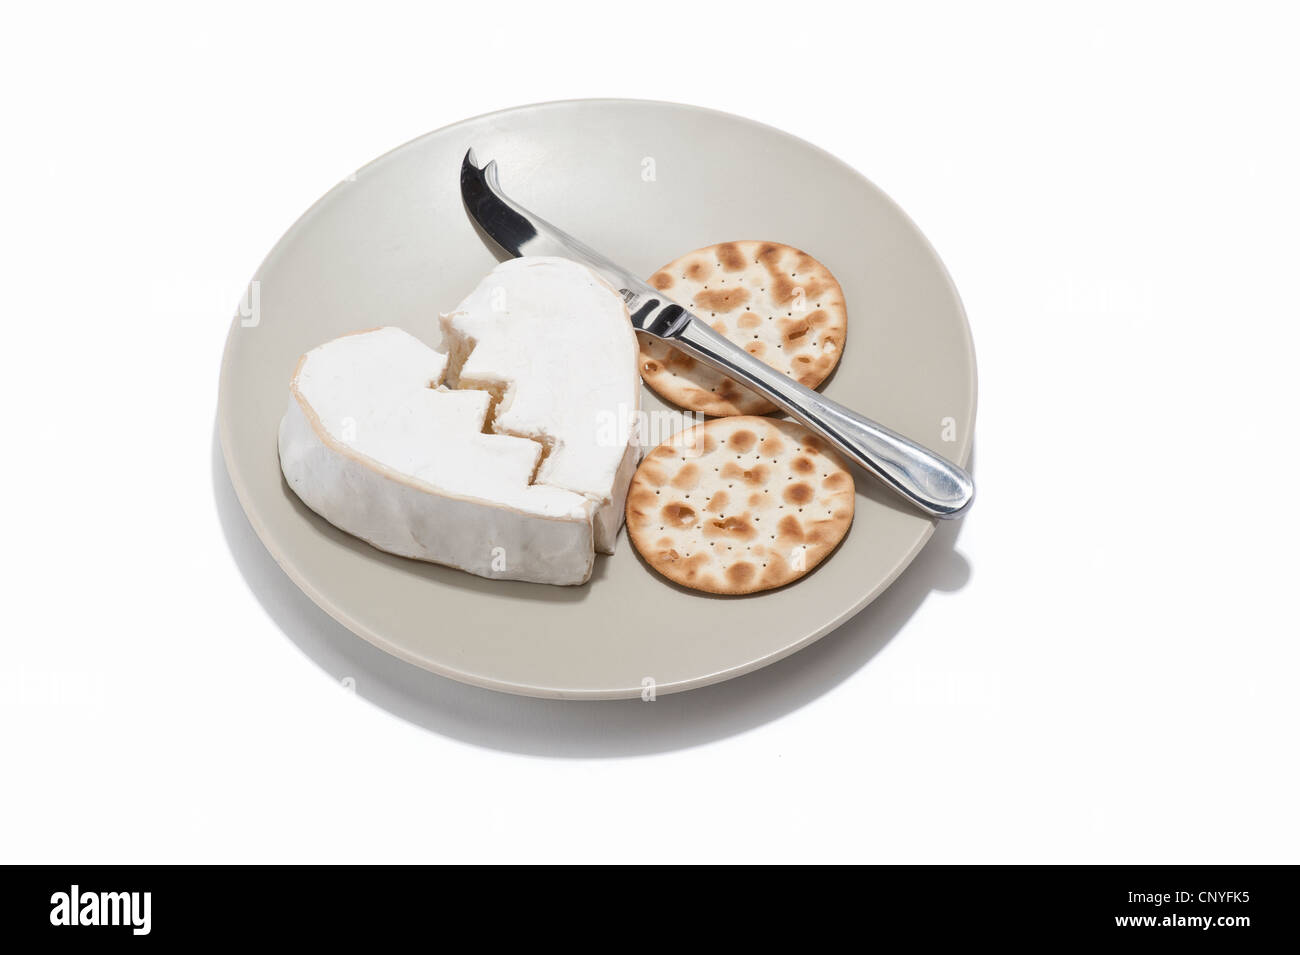 Ein gebrochenes Herz geformten Käse mit Crackern und Käsemesser auf einem Teller Stockfoto